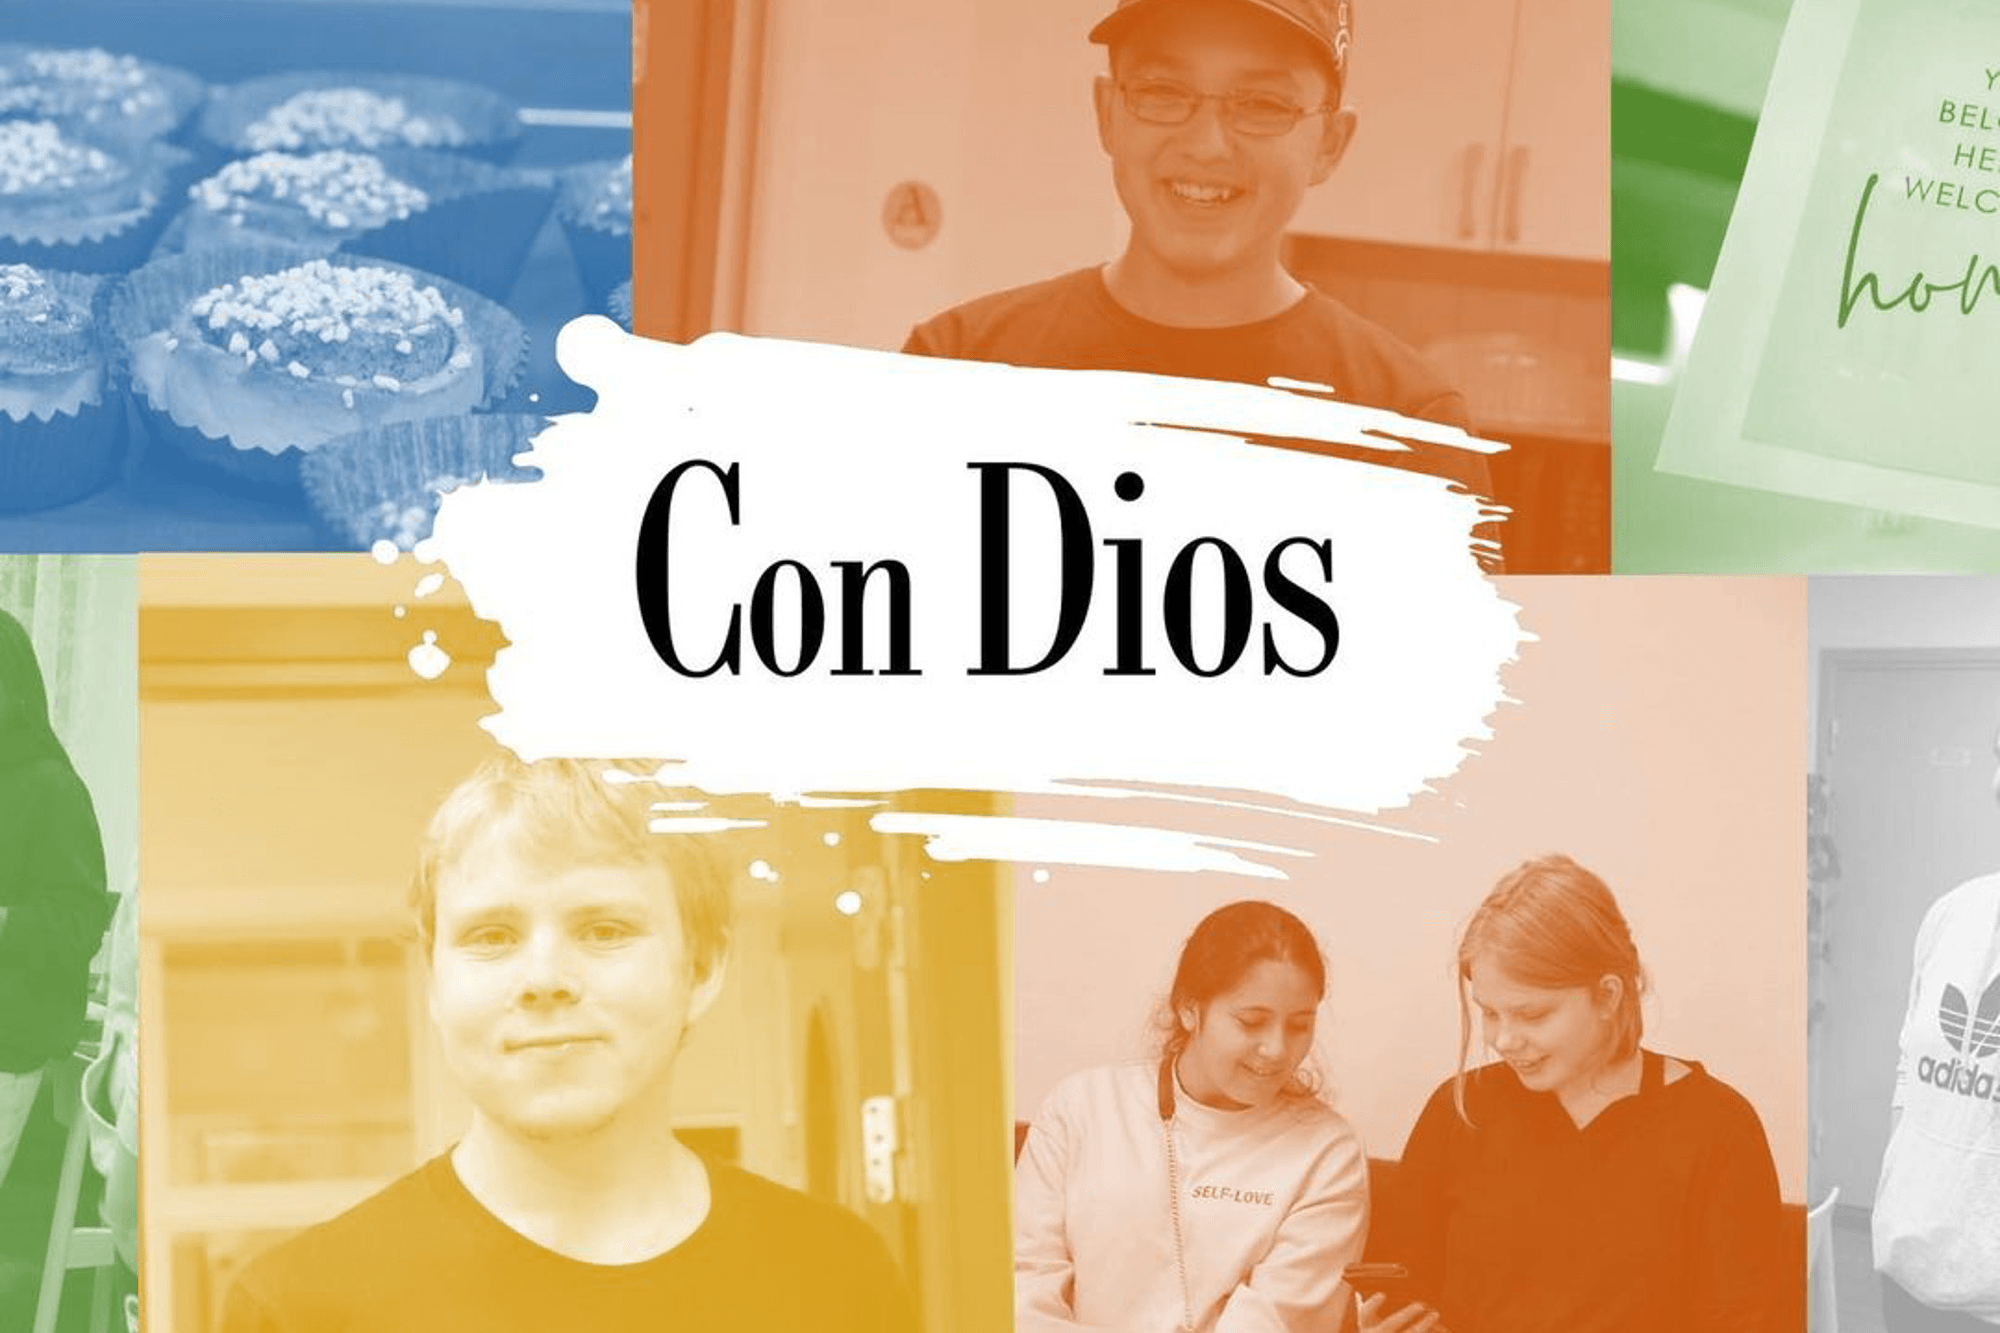 Text som säger "Con Dios" med bilder på glada personer och bullar runt om.